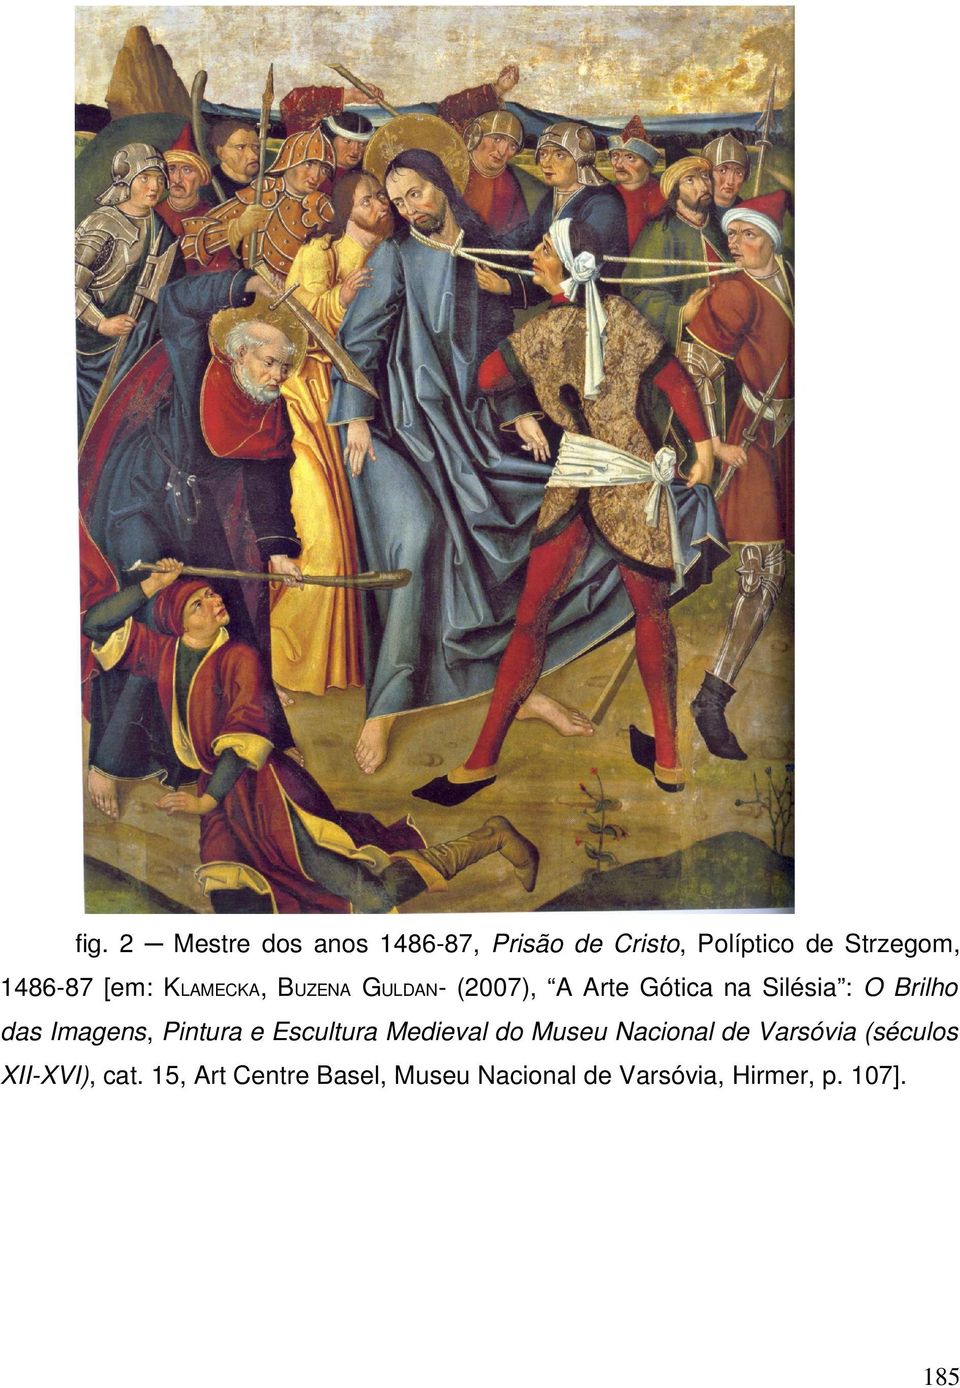 Imagens, Pintura e Escultura Medieval do Museu Nacional de Varsóvia (séculos